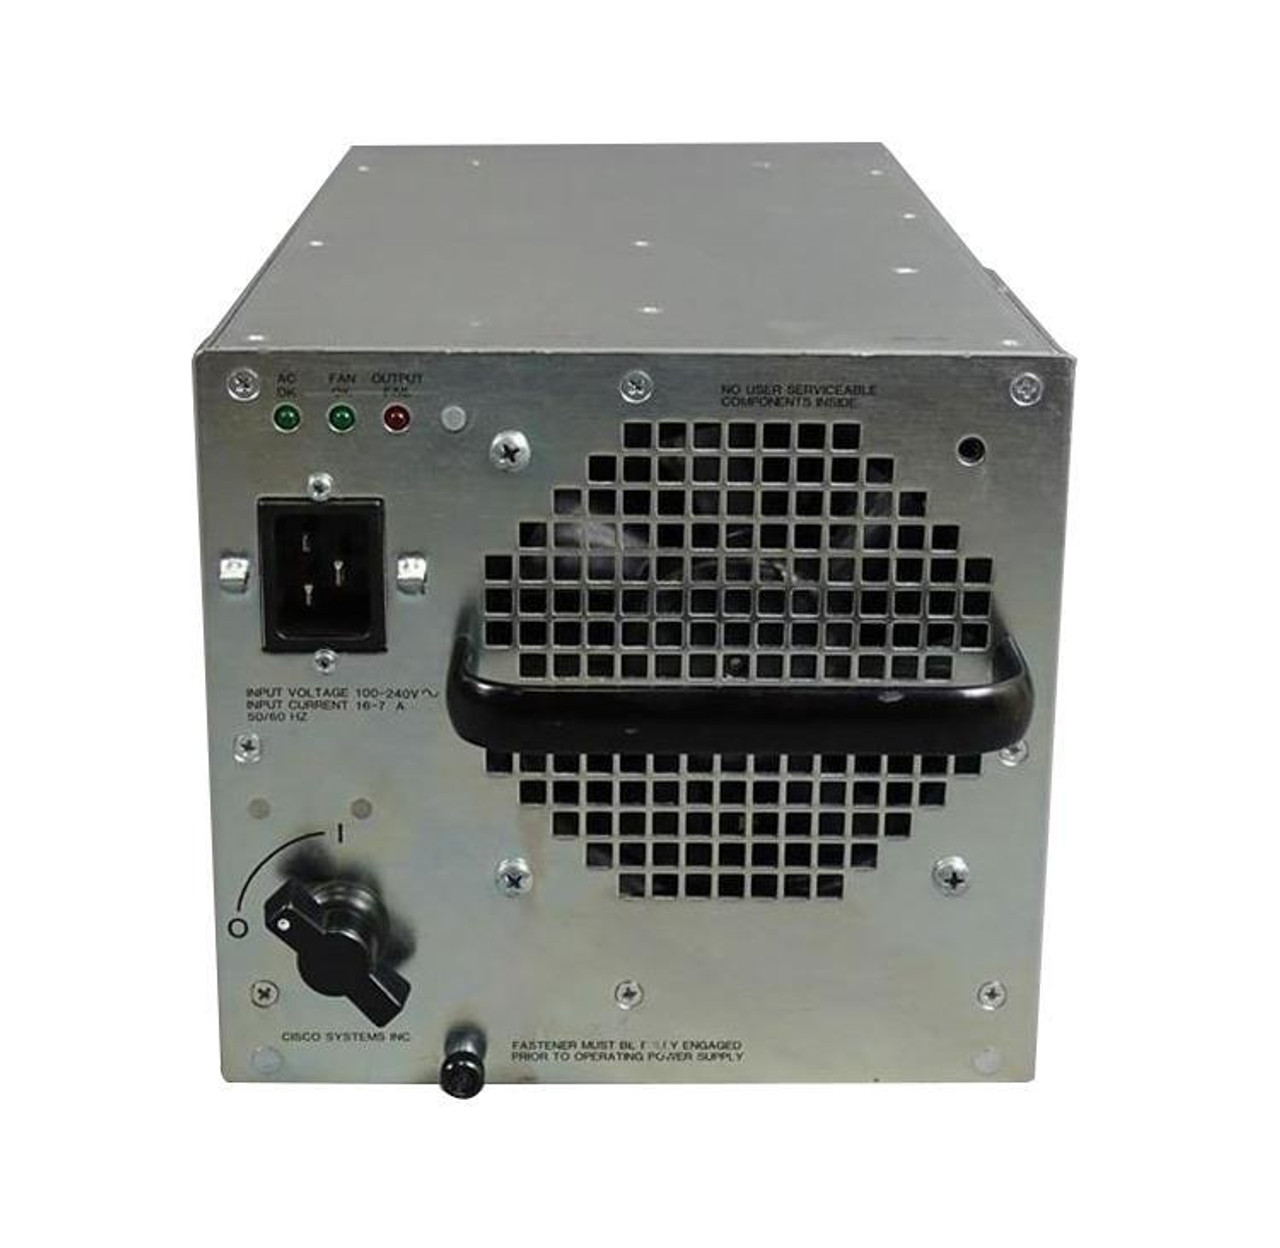 PWR-7513-AC= Cisco 1200-Watt AC Power Supply (Refurbished)